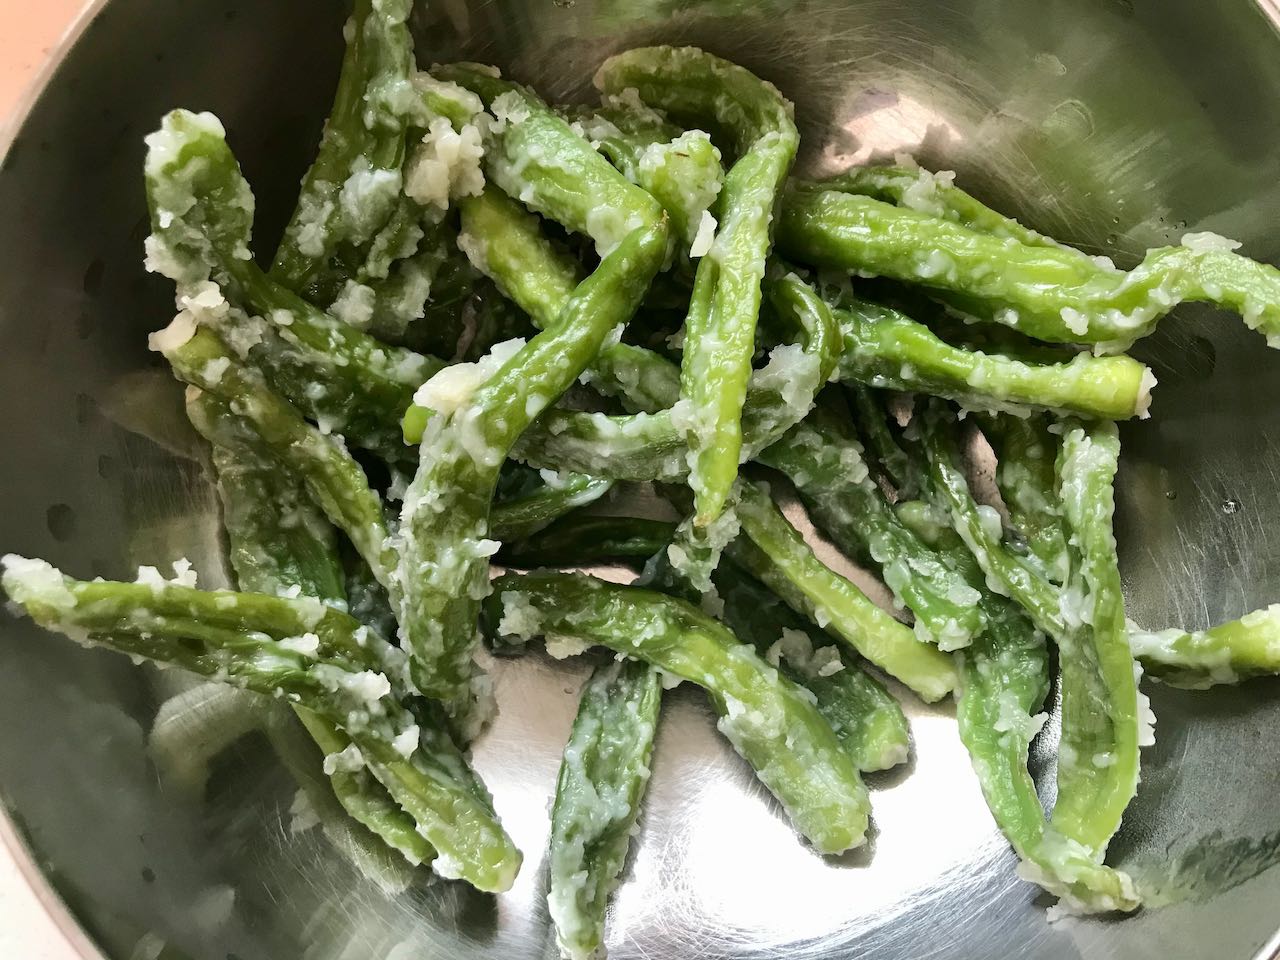 /lifelog/assets/2021-03-28-cooking-steamed-green-pepper-05.jpg